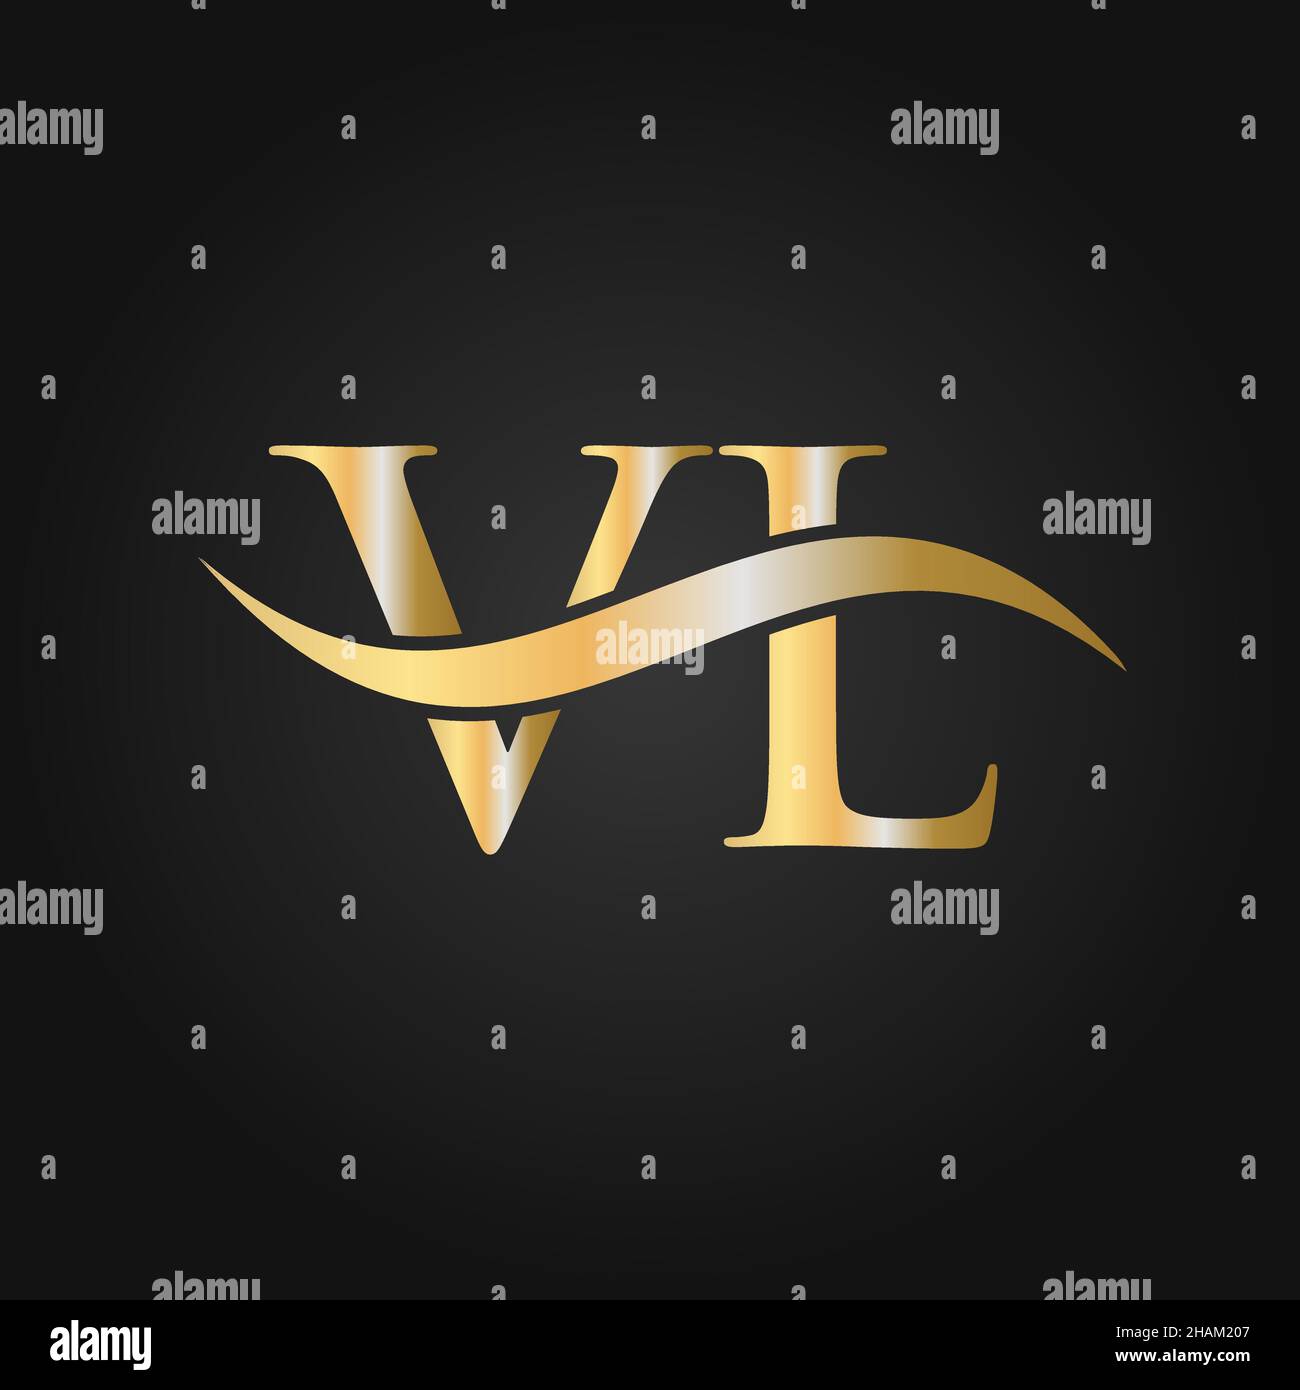 Initial Vl Logo Letter Design, Minimal Royal Crown Vl lv Feminine